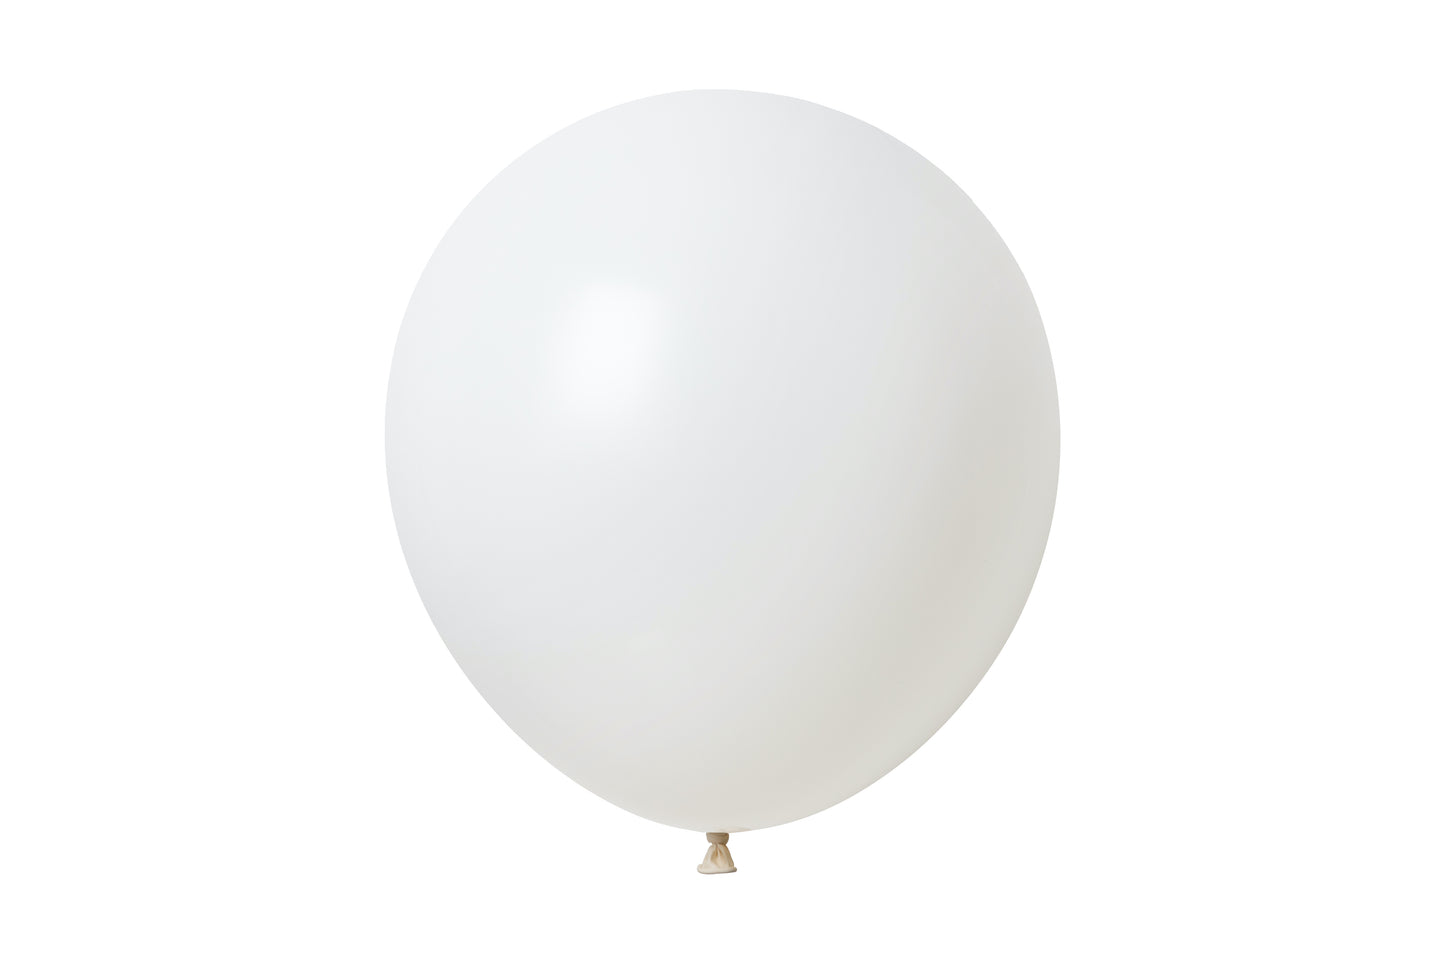 Winntex Premium 36" Latex Balloon - White - 5ct